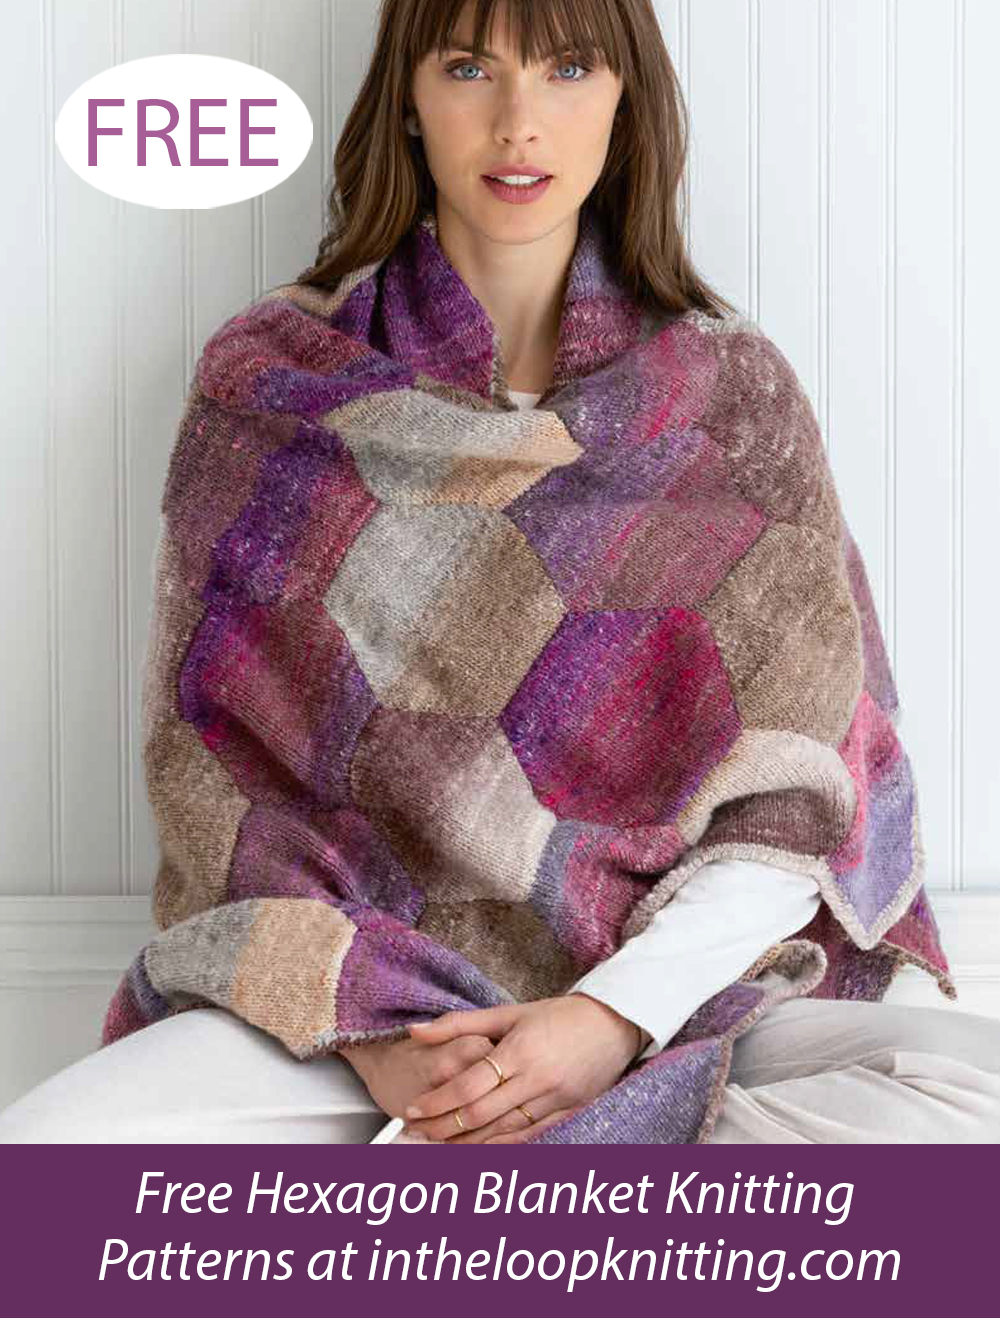 Free Hexad Blanket Knitting Pattern